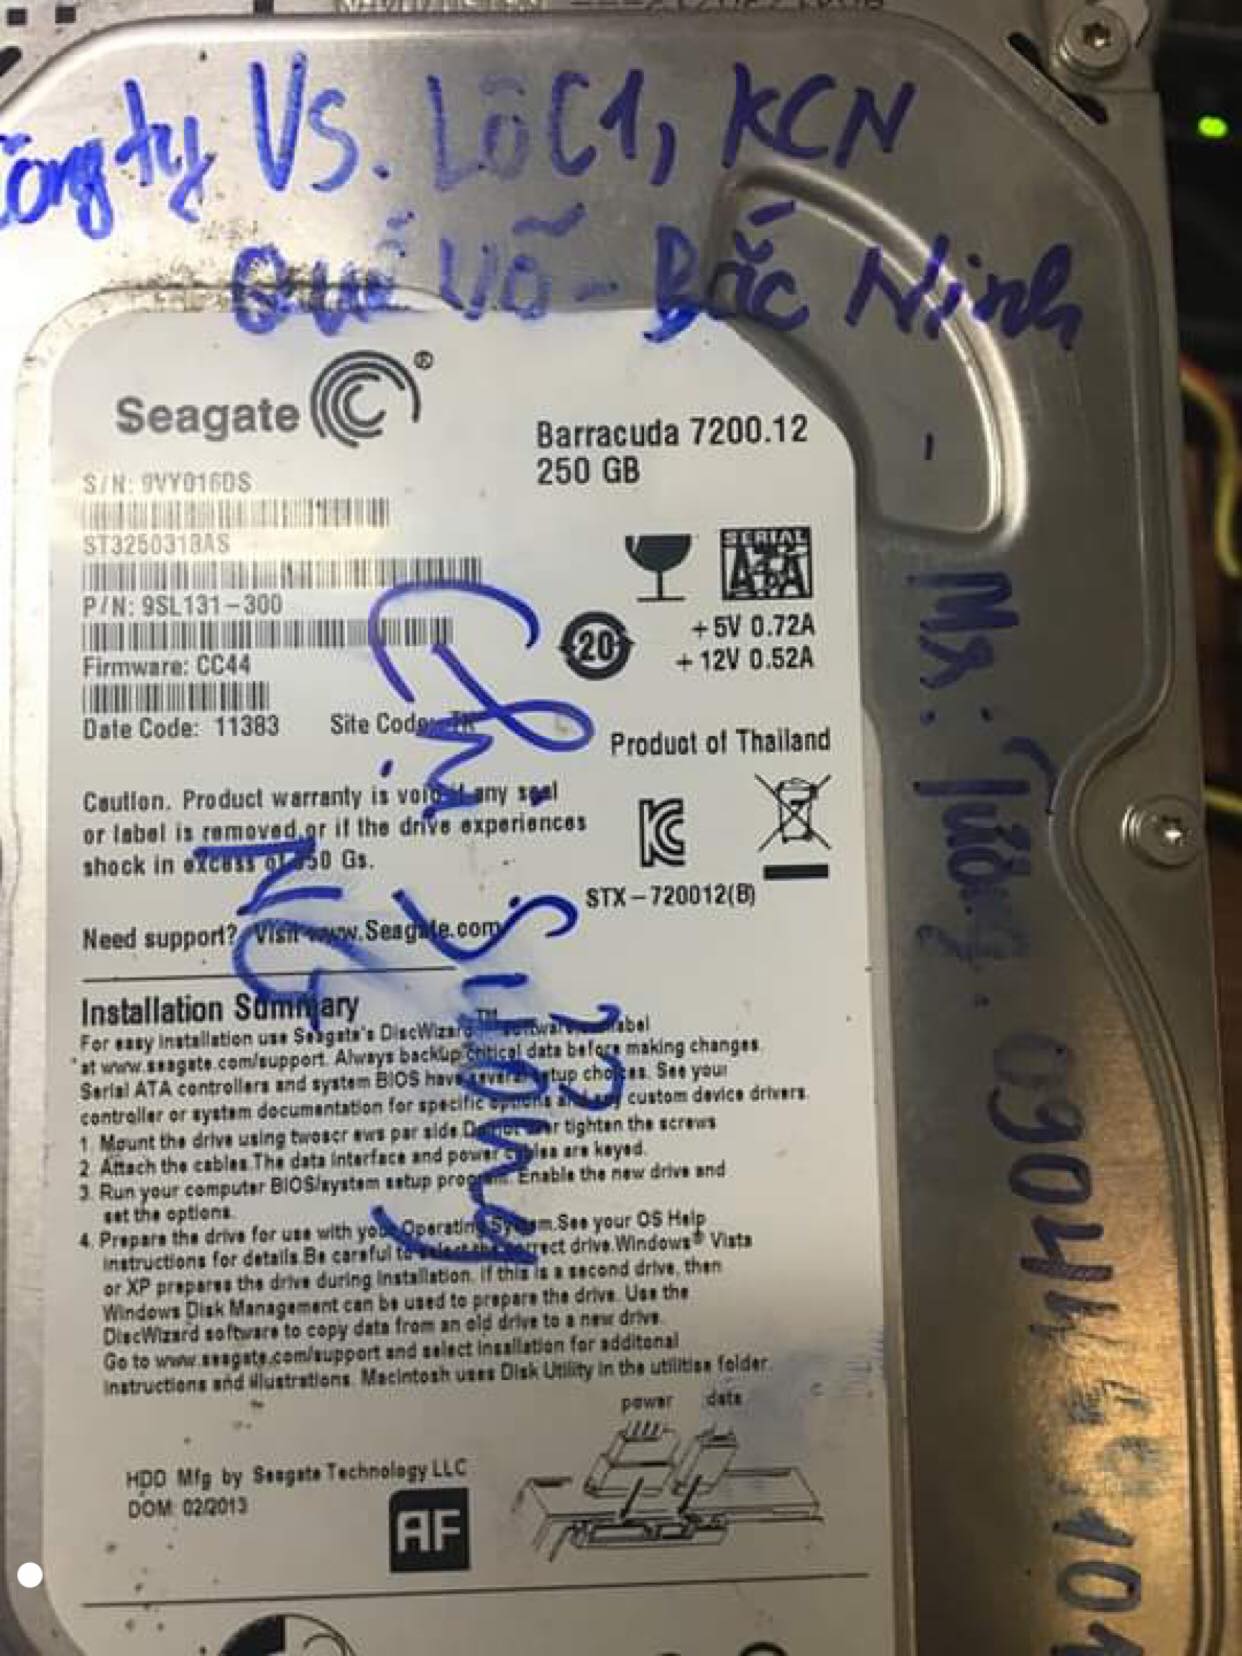 Cứu dữ liệu ổ cứng Seagate 250GB lỗi đầu đọc tại Bắc Ninh 29/08/2019 - cuumaytinh